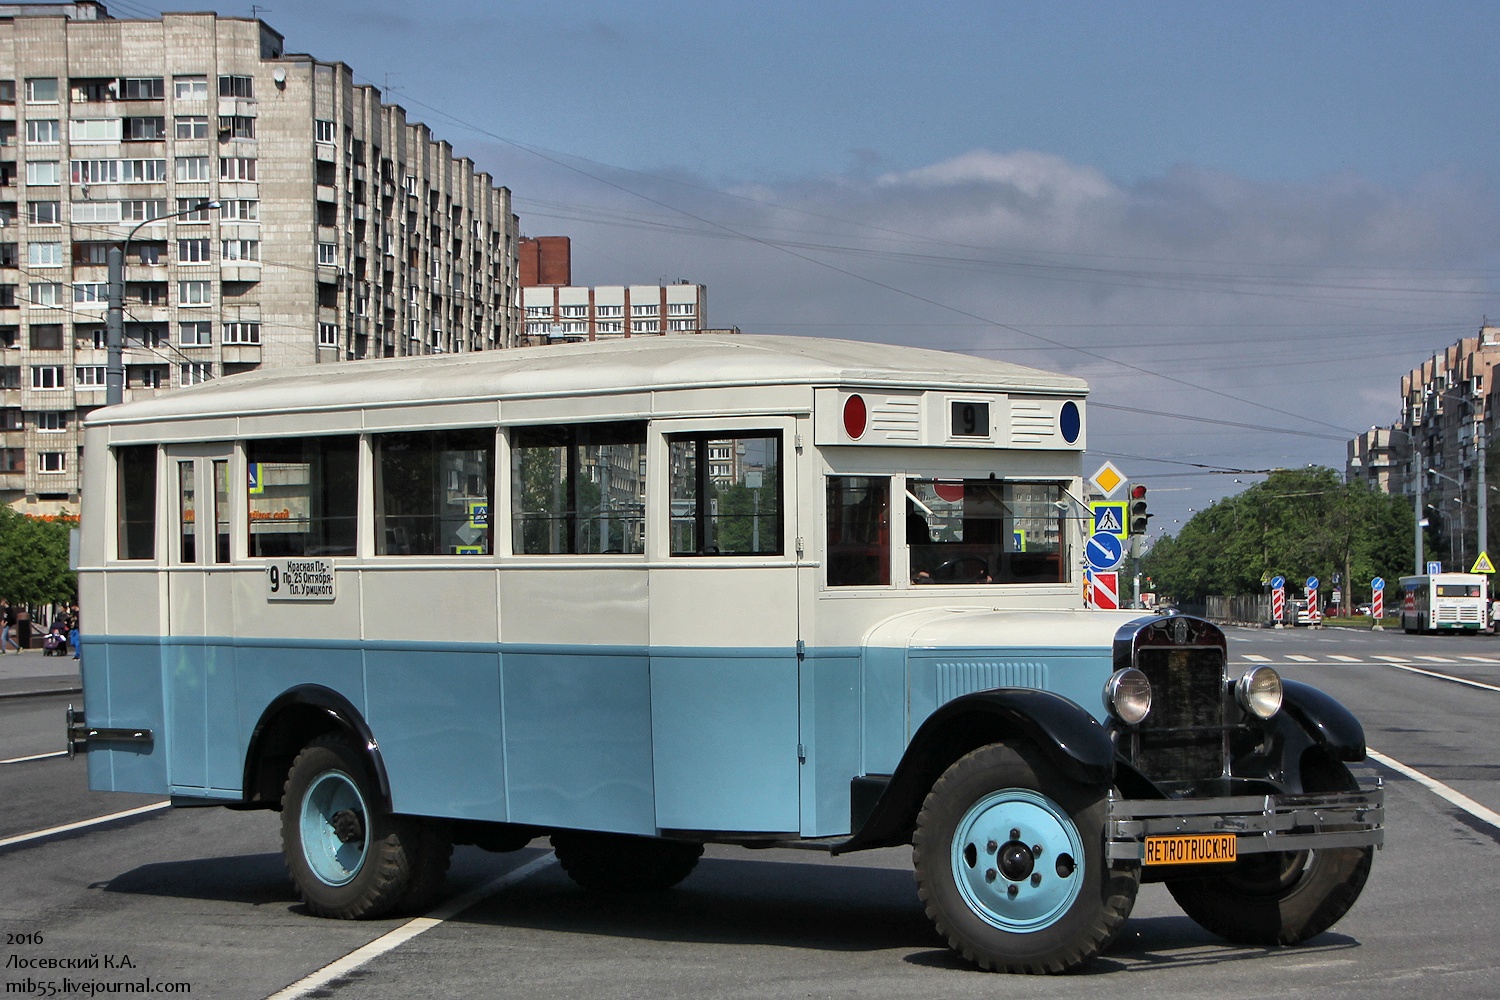 Советский общественный транспорт. ПАЗ-665 «турист». ГАЗ 51 автобус. ЛИАЗ-677 автобус. КАВЗ 695.